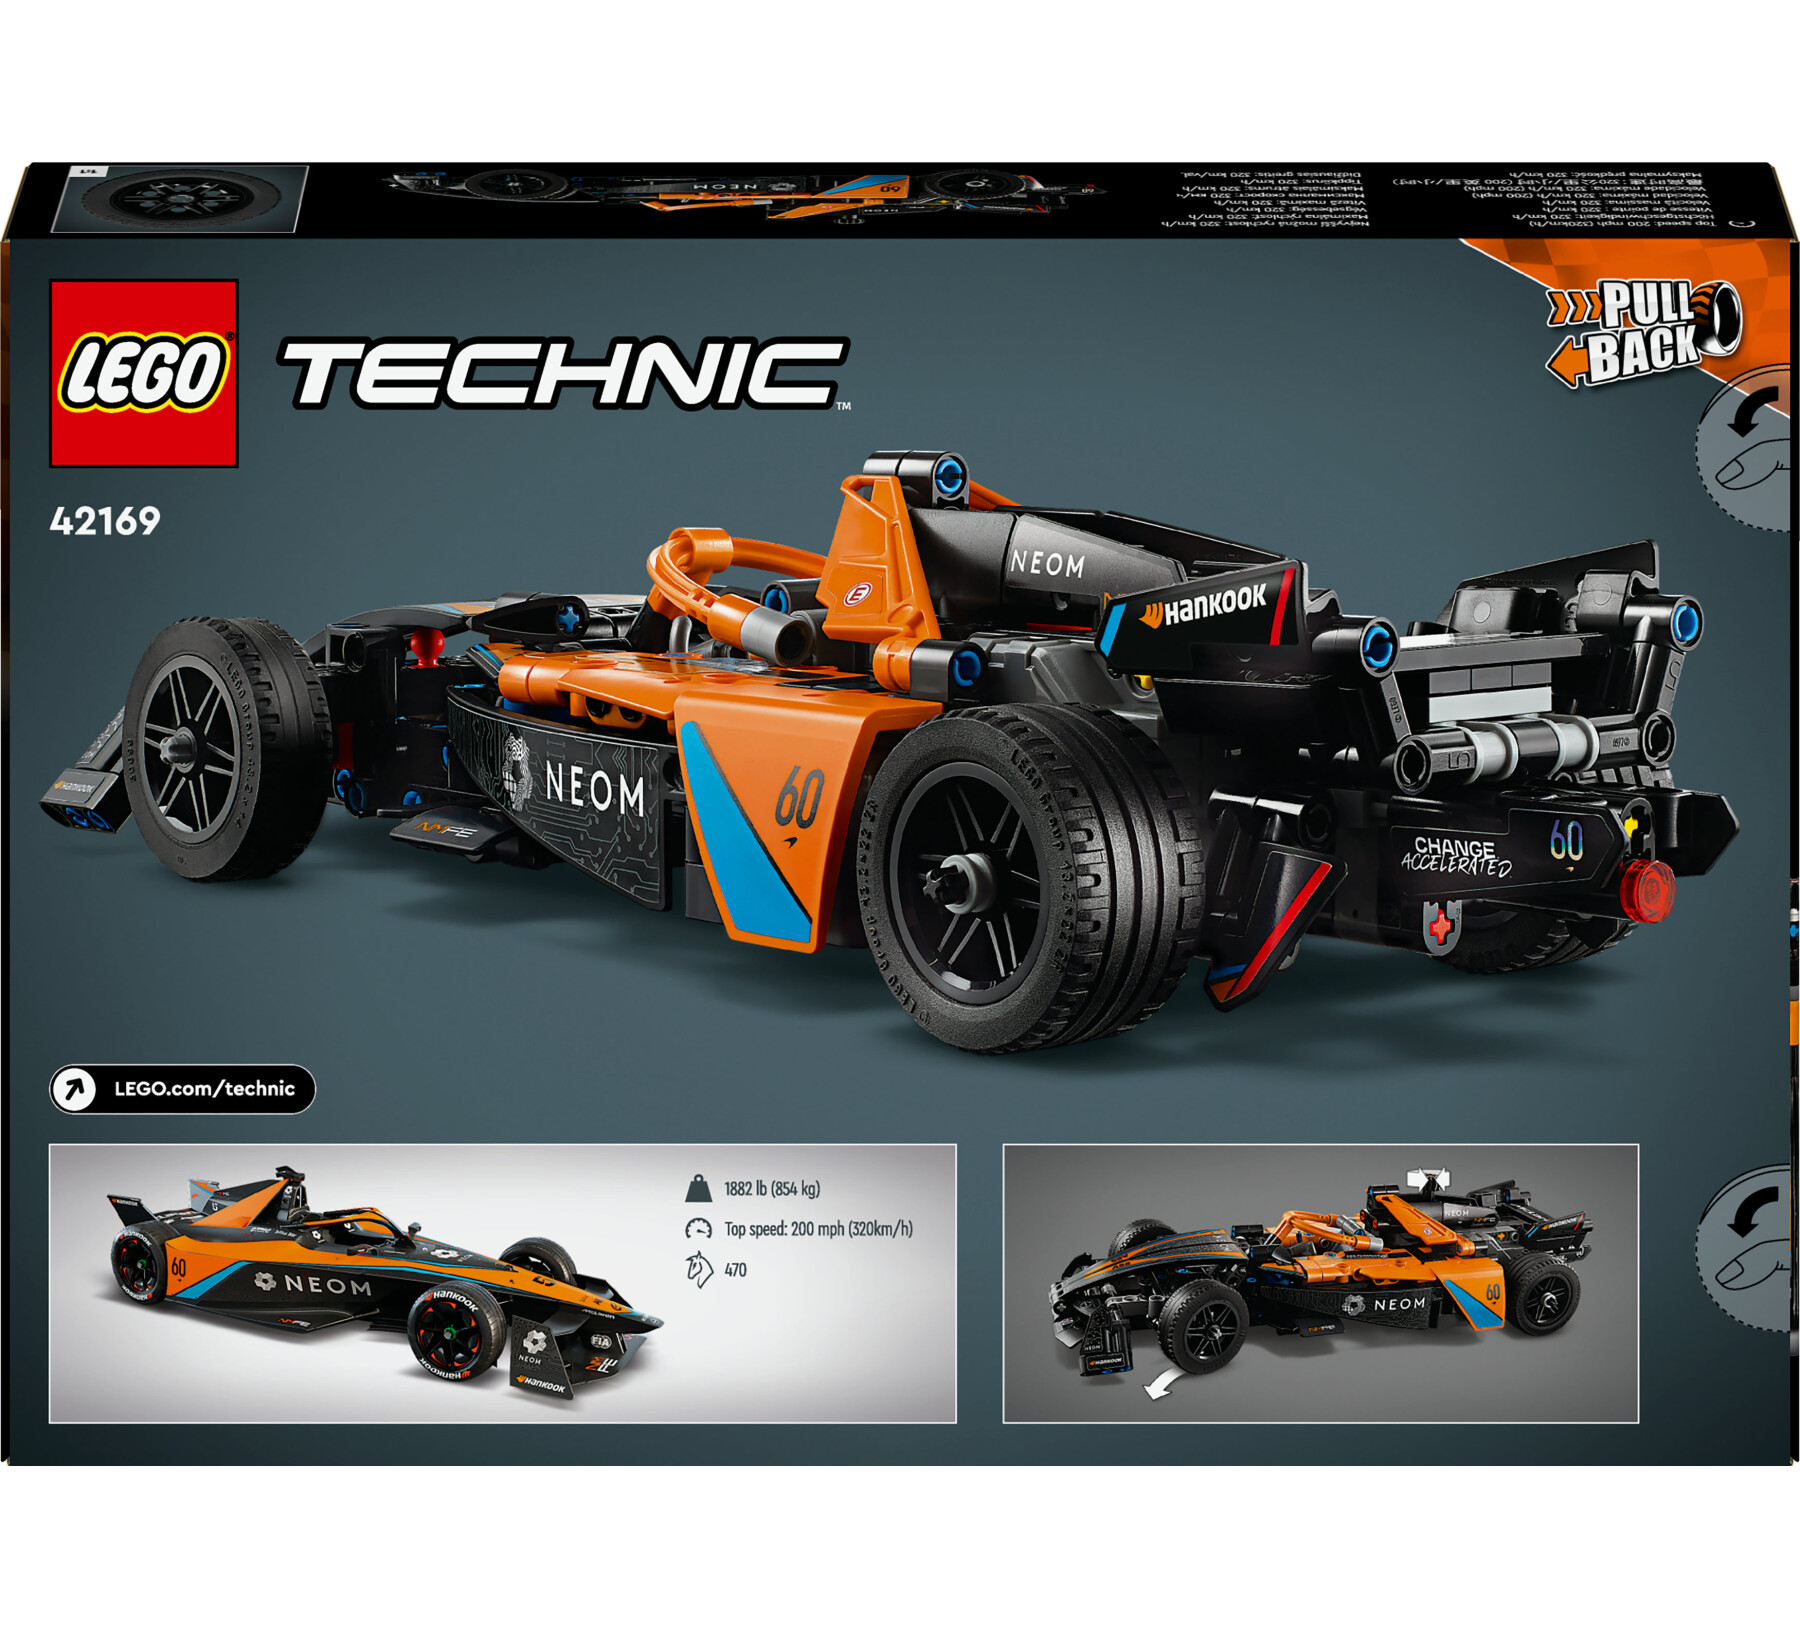 Lego technic 42169 neom mclaren formula e race car, macchina giocattolo per bambini 9+, modellino di auto f1 da costruire - LEGO TECHNIC